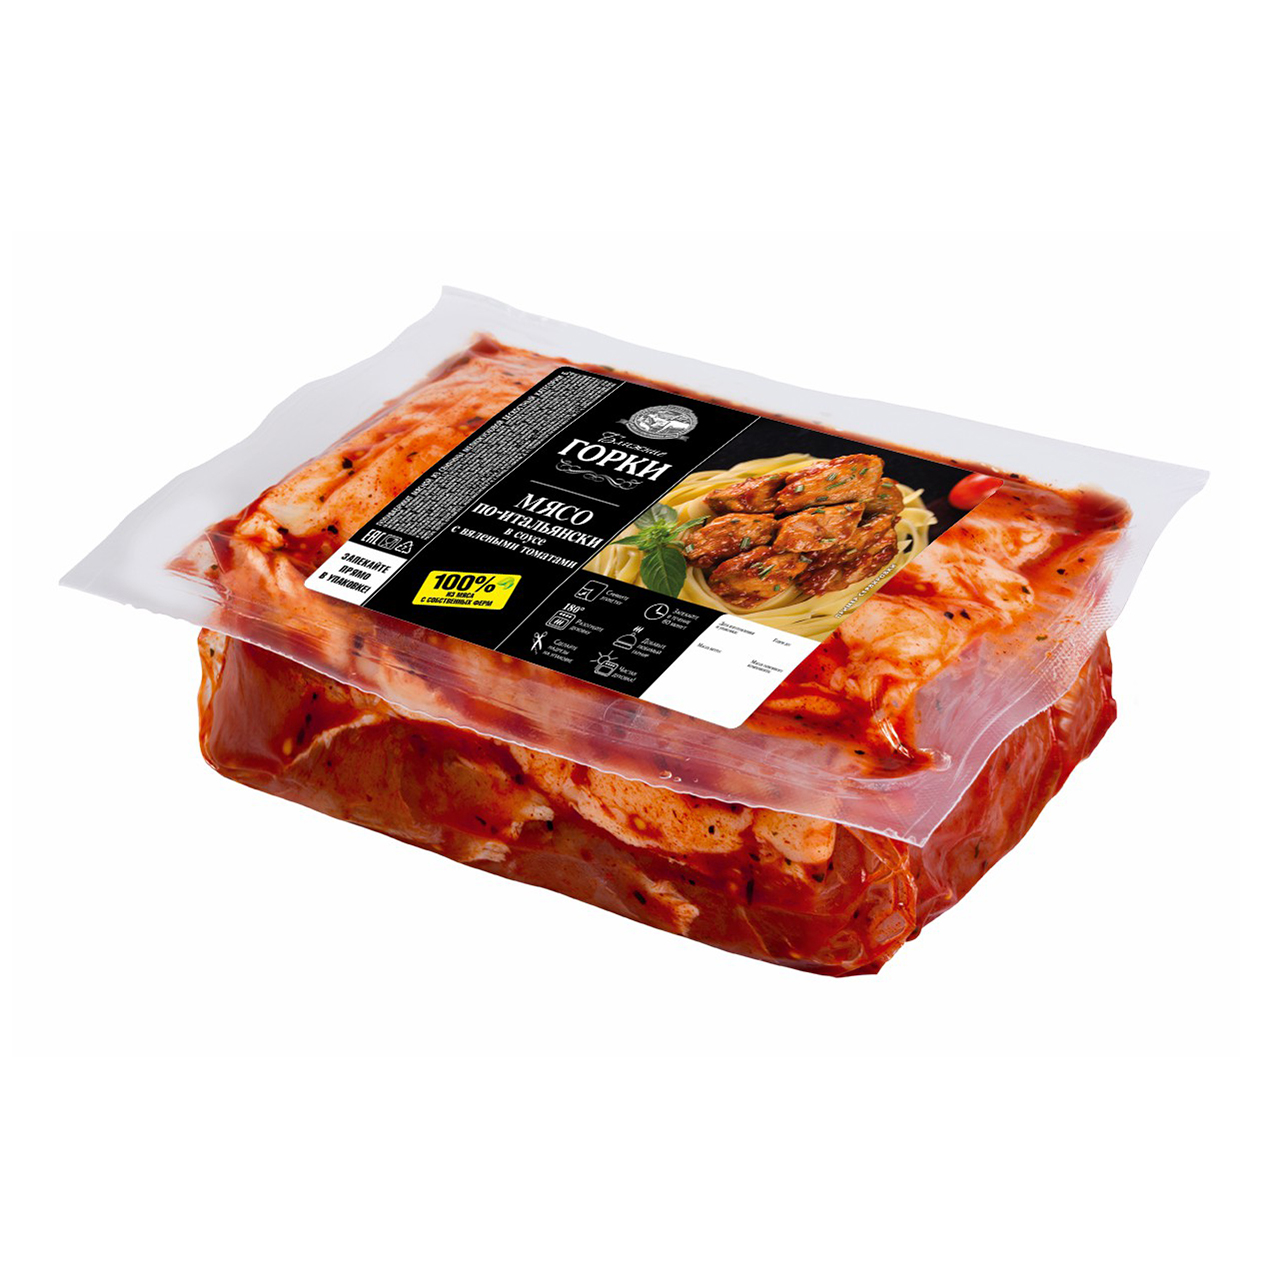 Мясо для запекания из свинины Ближние Горки по-итальянски в соусе с вялеными томатами+-1кг